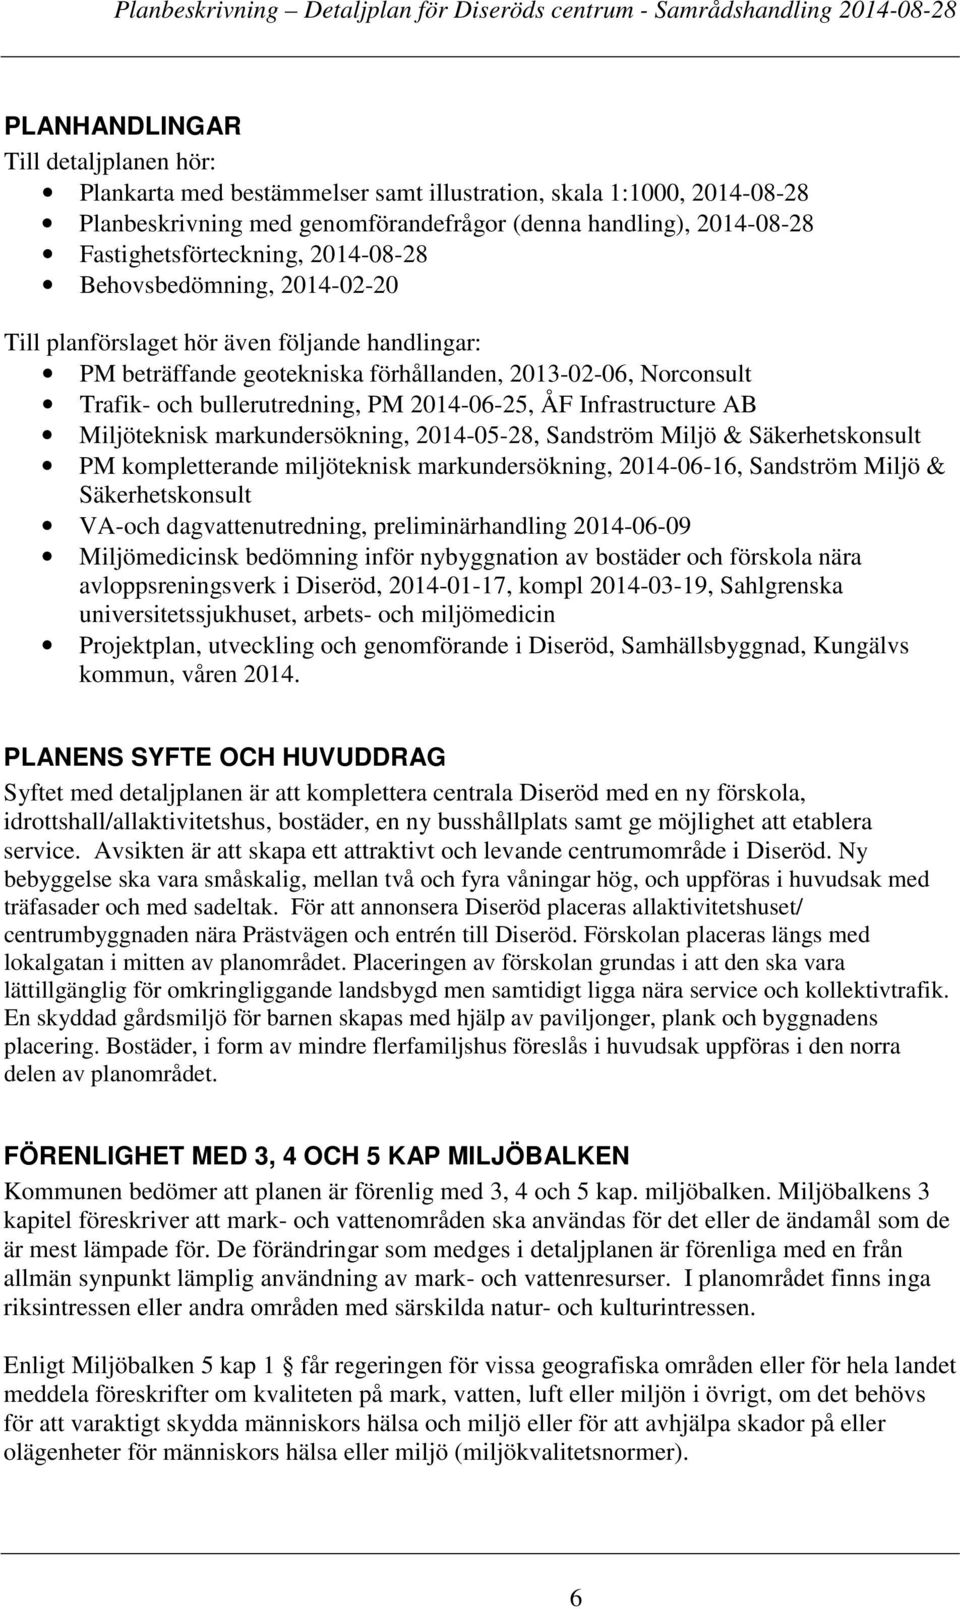 Infrastructure AB Miljöteknisk markundersökning, 2014-05-28, Sandström Miljö & Säkerhetskonsult PM kompletterande miljöteknisk markundersökning, 2014-06-16, Sandström Miljö & Säkerhetskonsult VA-och